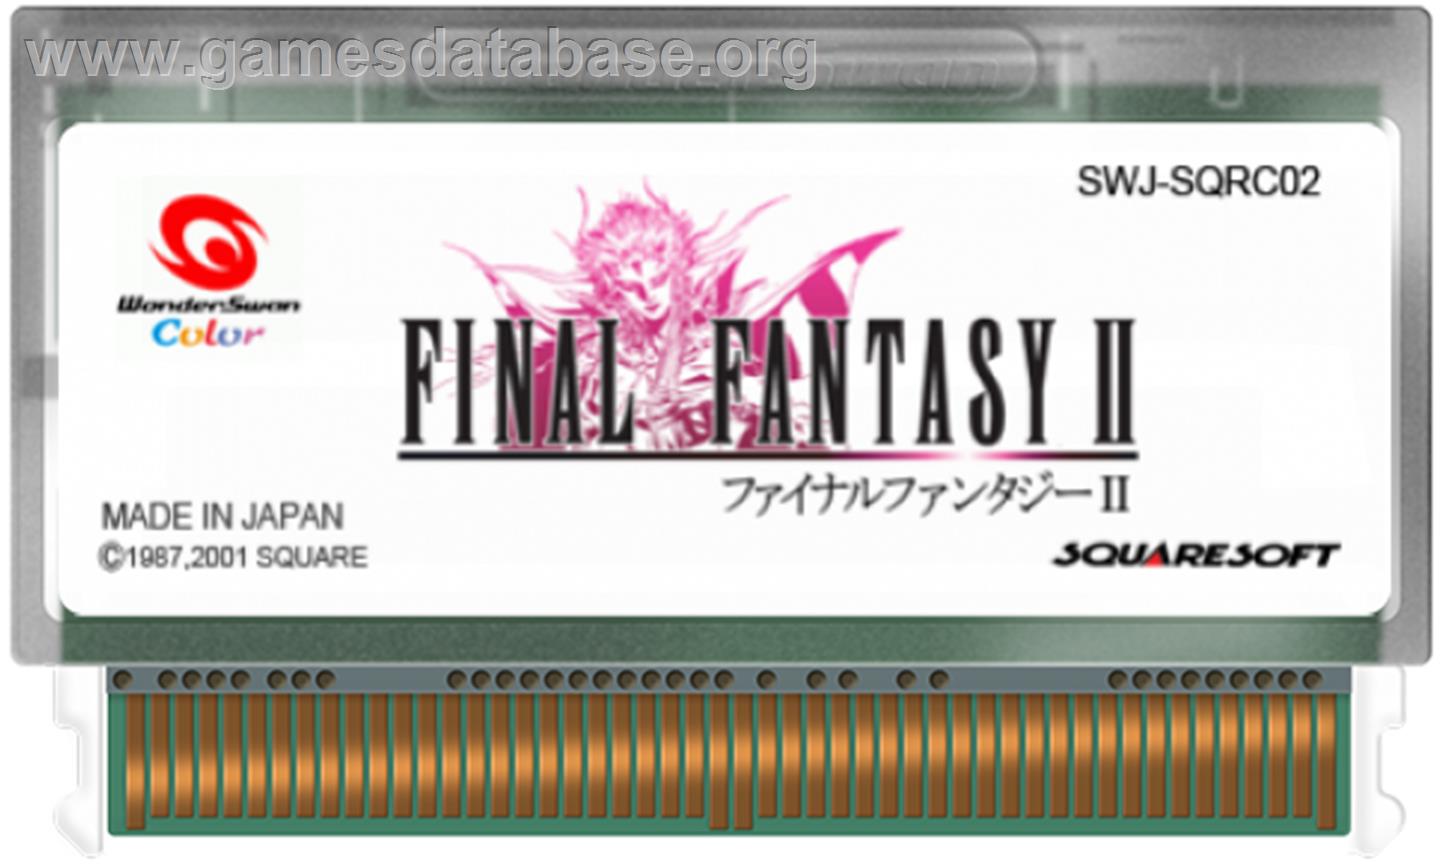 Final Fantasy II - Bandai WonderSwan Color - Artwork - Cartridge